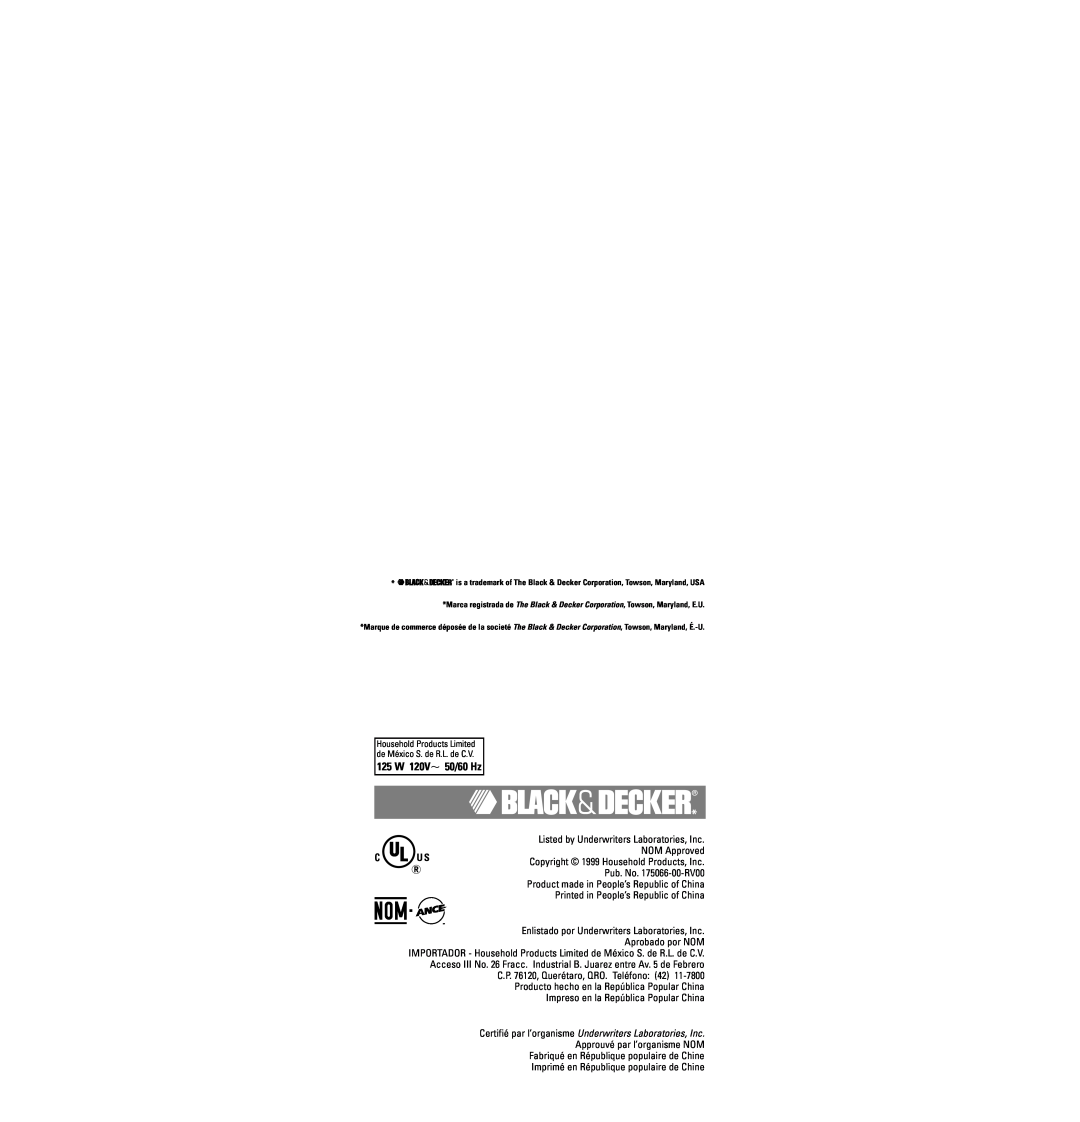 Black & Decker MX20 warranty 125 W 120V 50/60 Hz, Certifié par l’organisme Underwriters Laboratories, Inc 